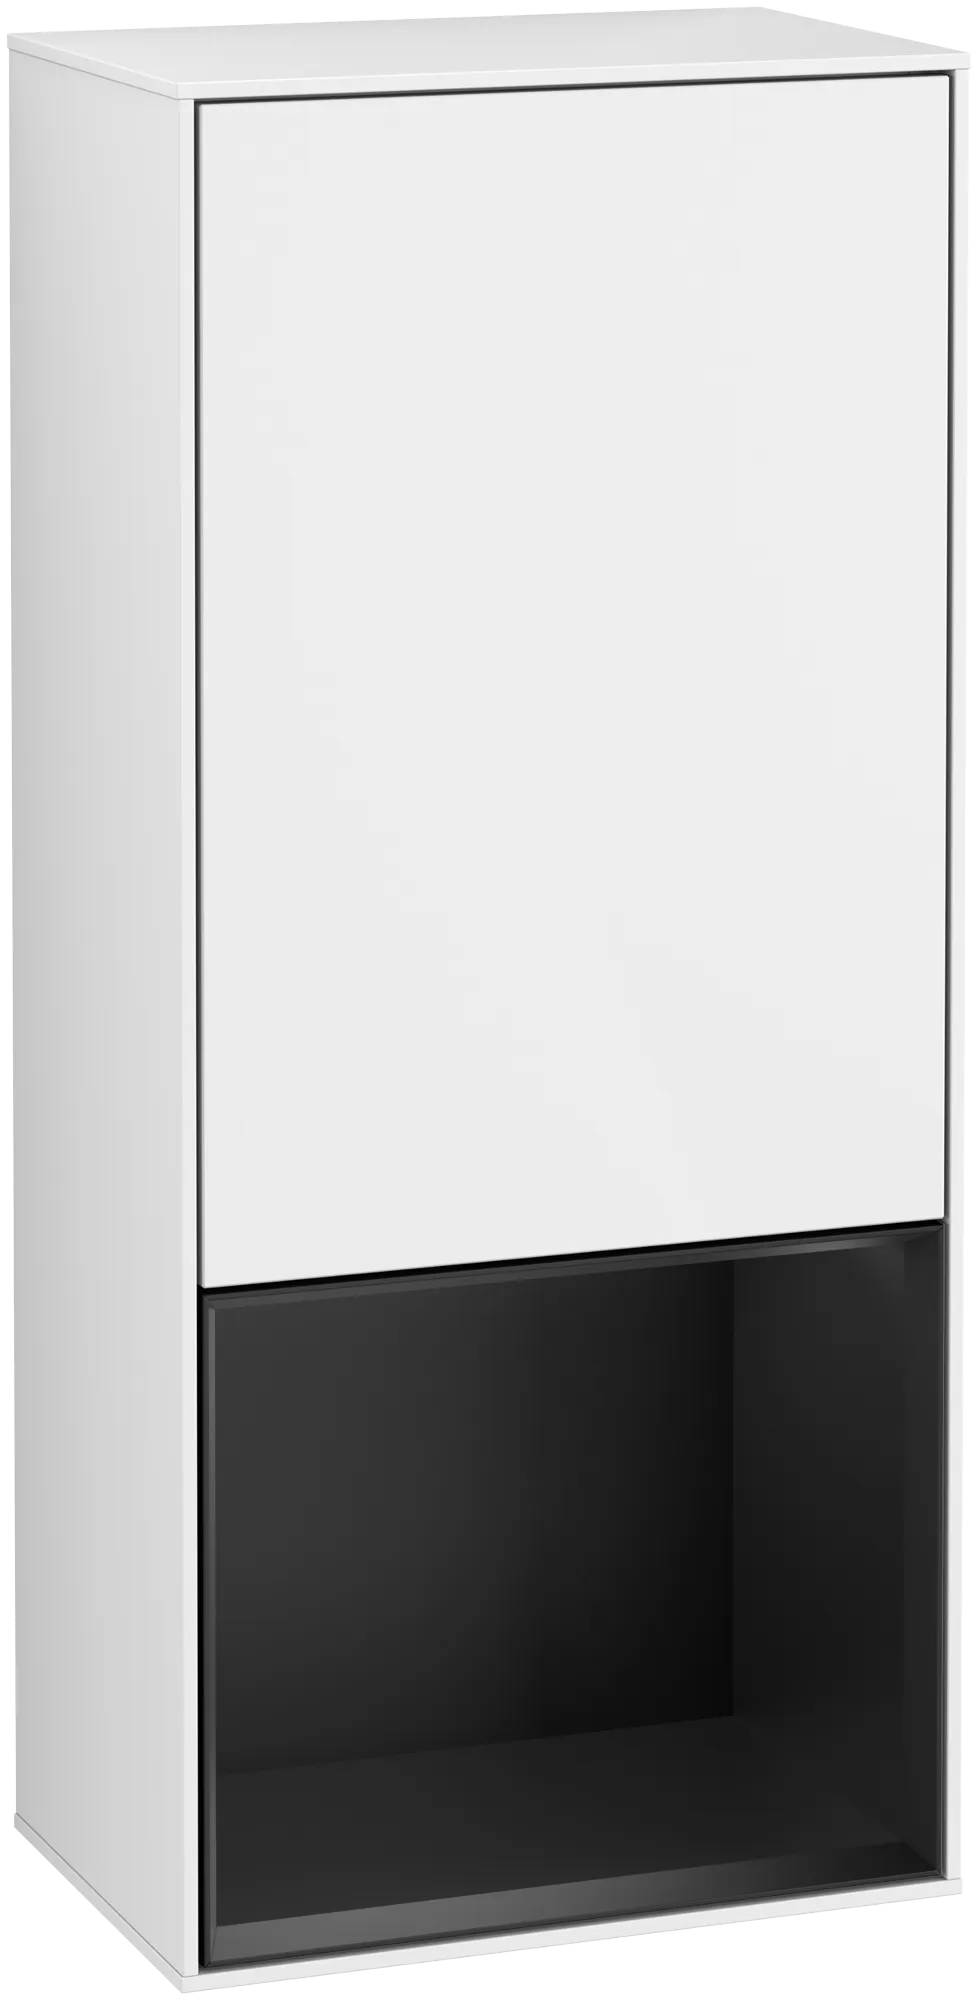 Bild von VILLEROY BOCH Finion Seitenschrank, mit Beleuchtung, 1 Tür, 418 x 936 x 270 mm, Glossy White Lacquer / Black Matt Lacquer #G550PDGF